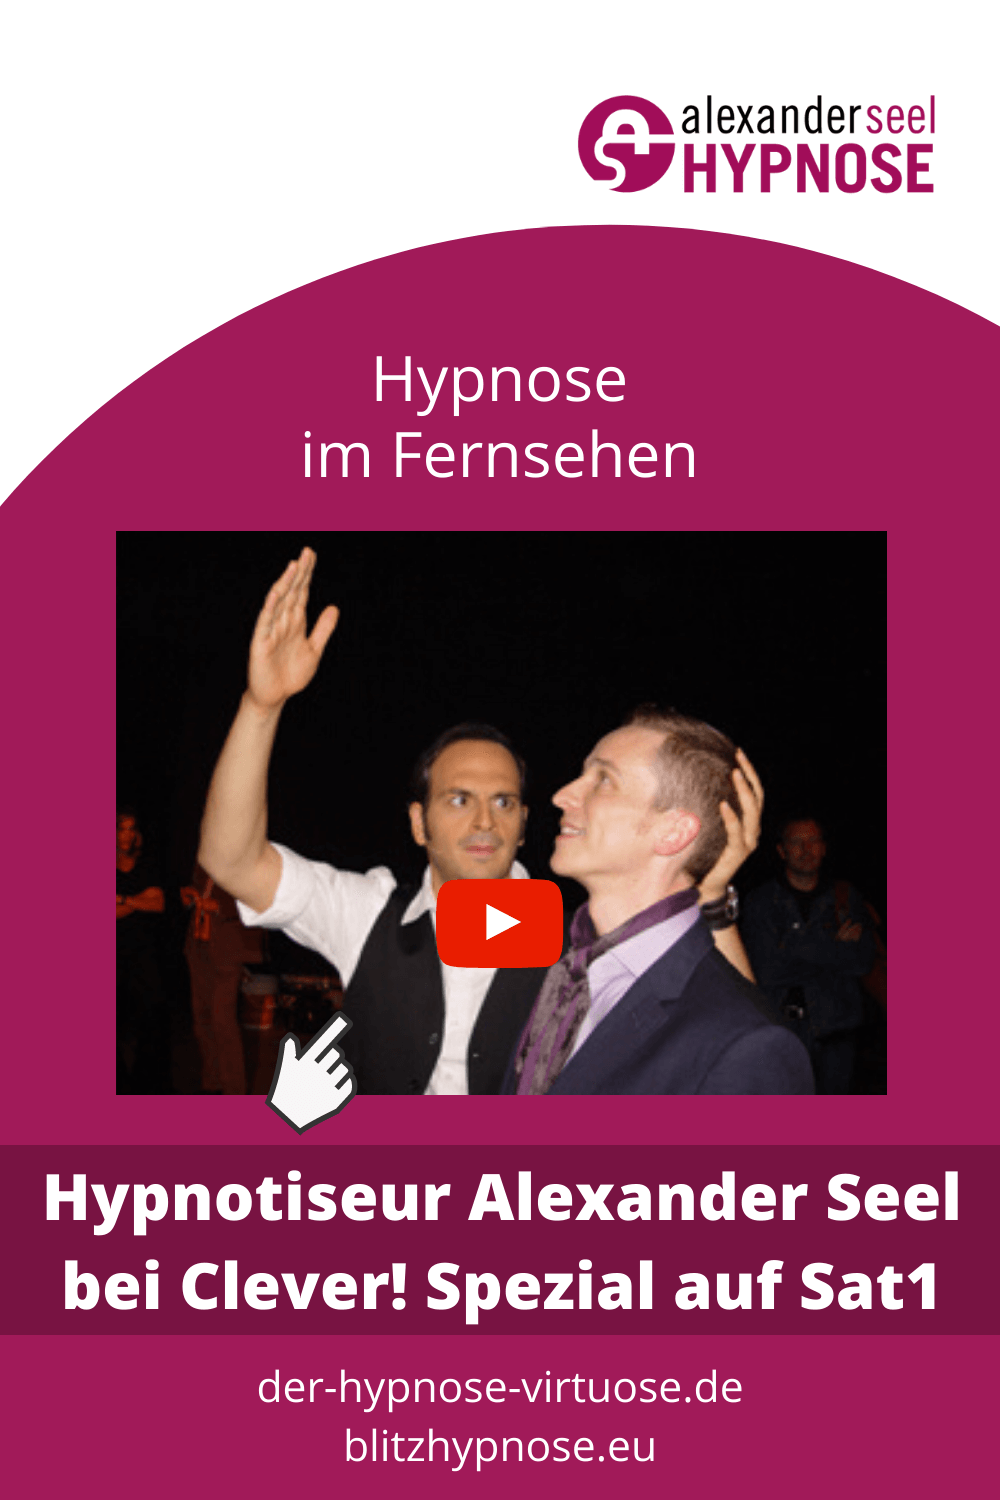 Hypnotiseur Alexander Seel im Fernsehen bei Clever auf Sat1 - Pinterest Pin